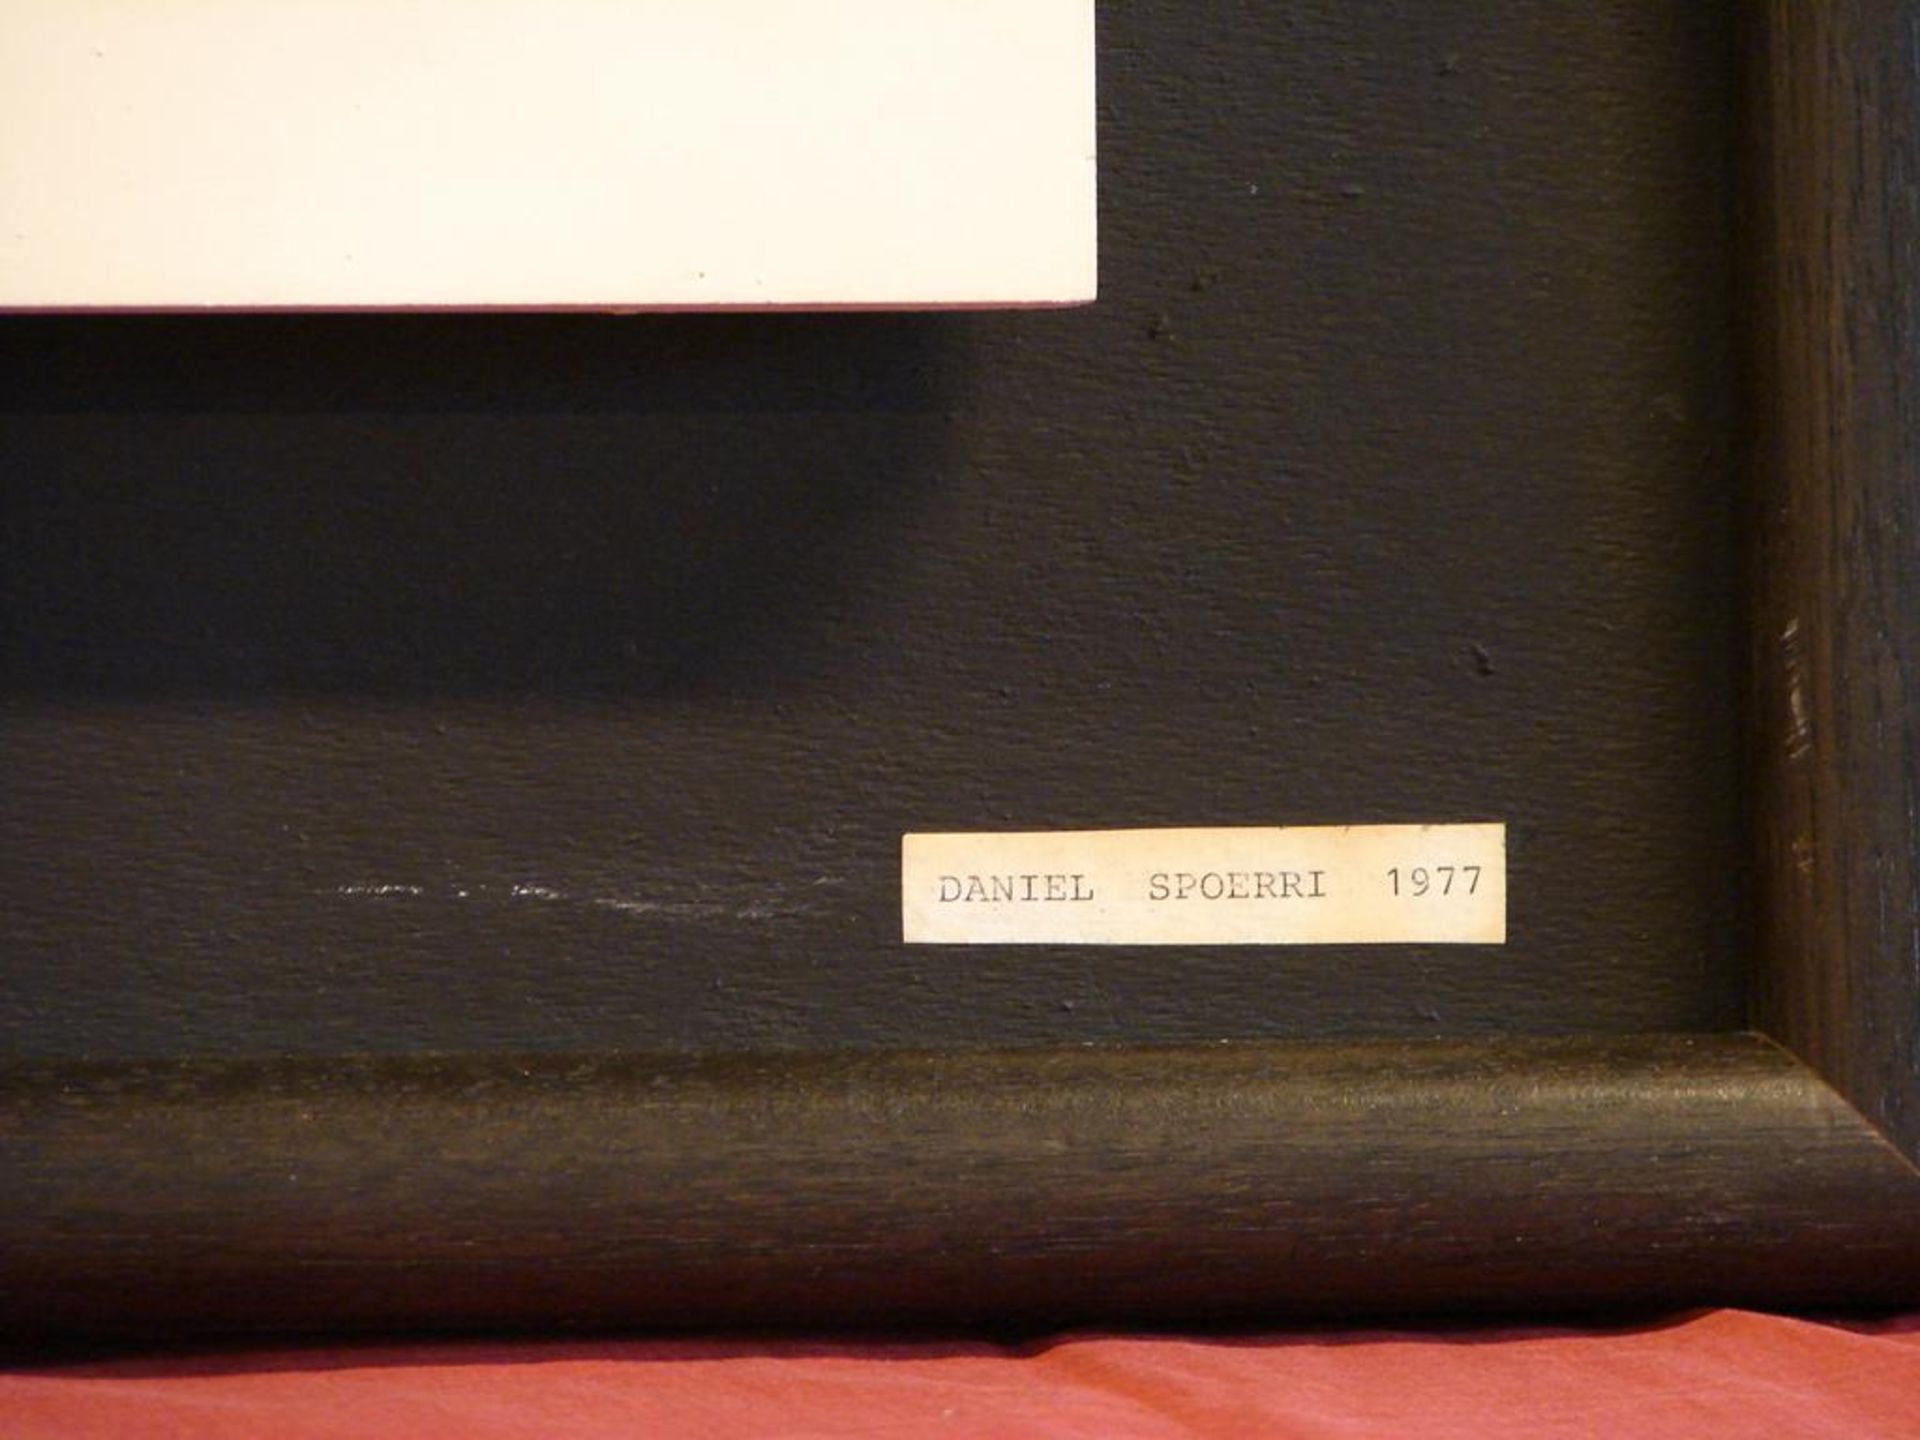 DANIEL SPOERI, Modern, Textilarbeit, dat.' 77 , bezeichnet, ca. 65x65 cm, Kein Postversand möglich - Bild 2 aus 3